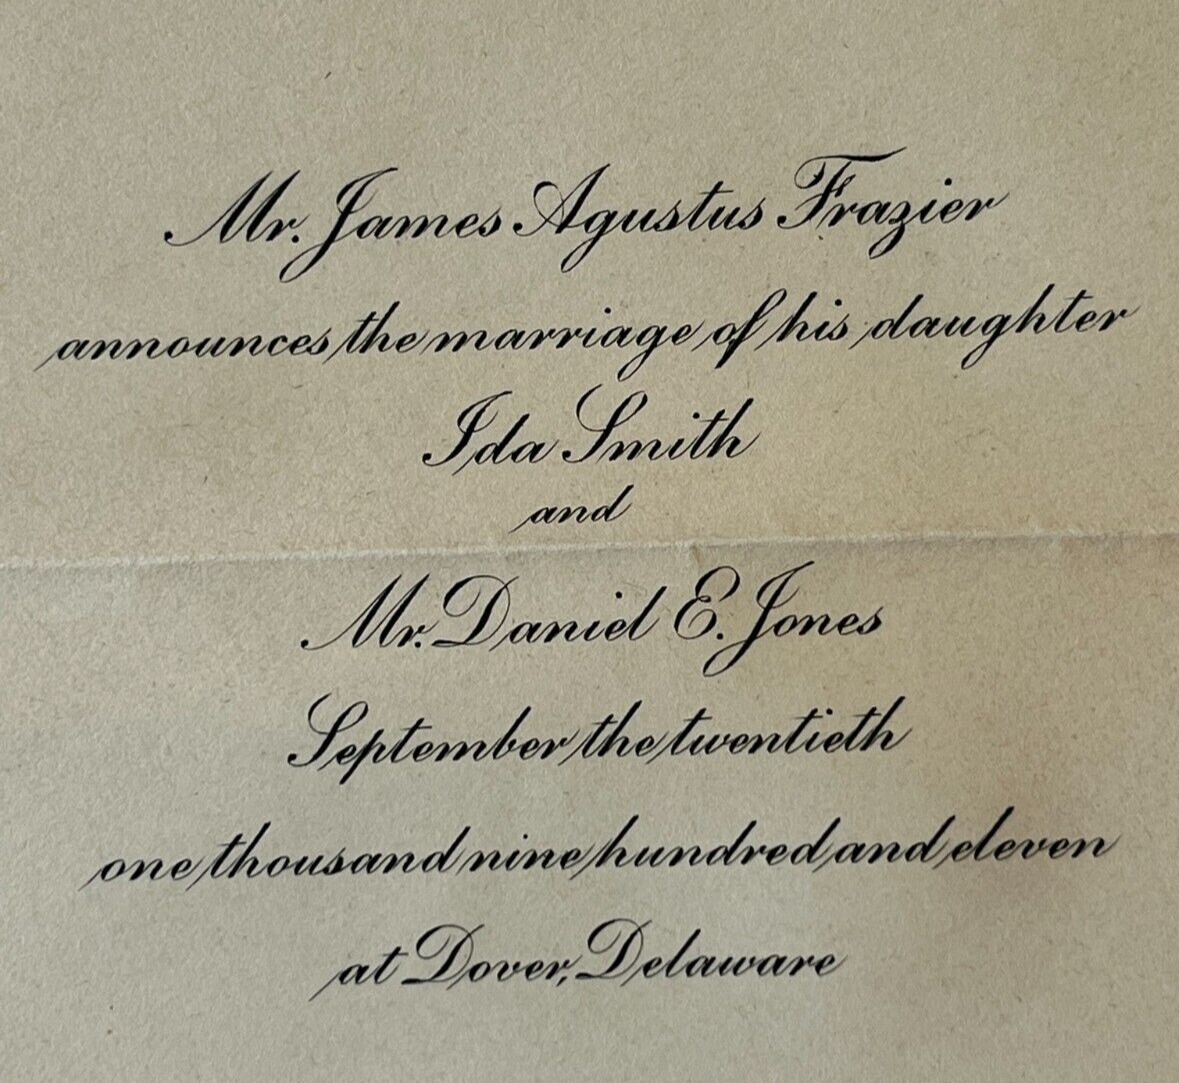 Dover Delaware Wedding Invitation Ida Smith Frazier to Daniel E. Jones 1911